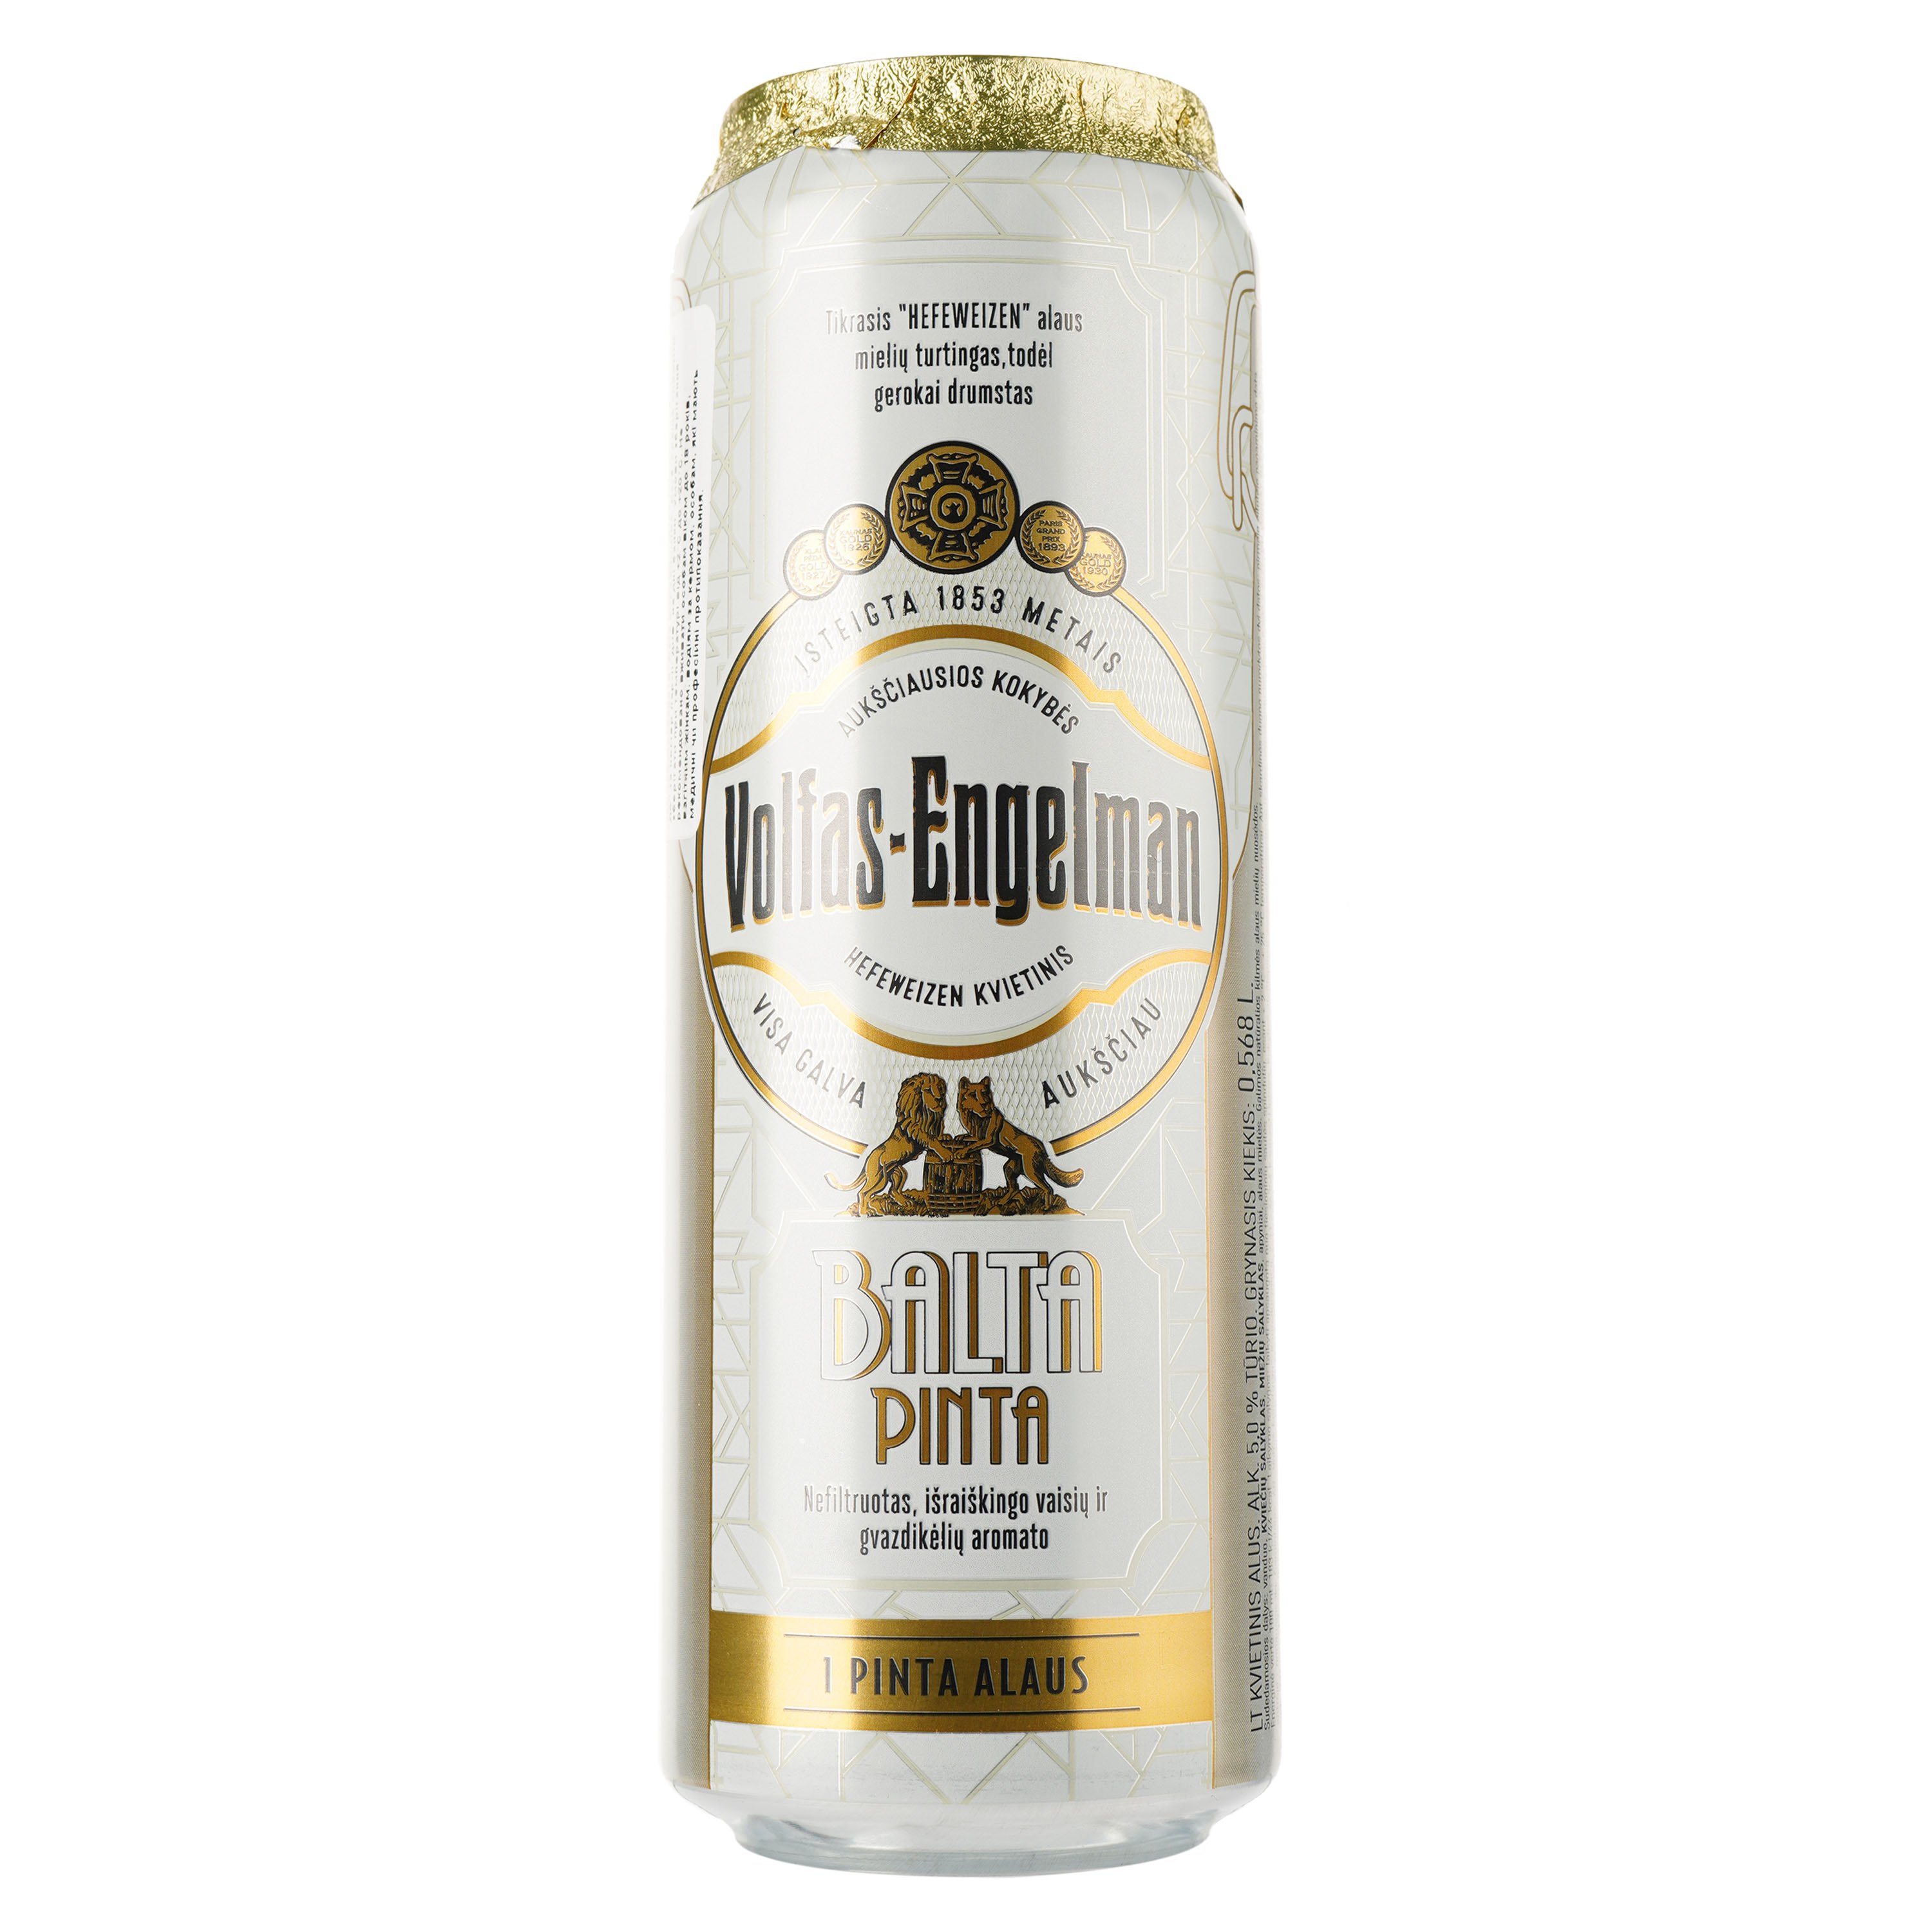 Пиво Volfas Engelman Balta Pinta світле 5% 2.272 л (4 шт. х 0.568 л) з/б - фото 2